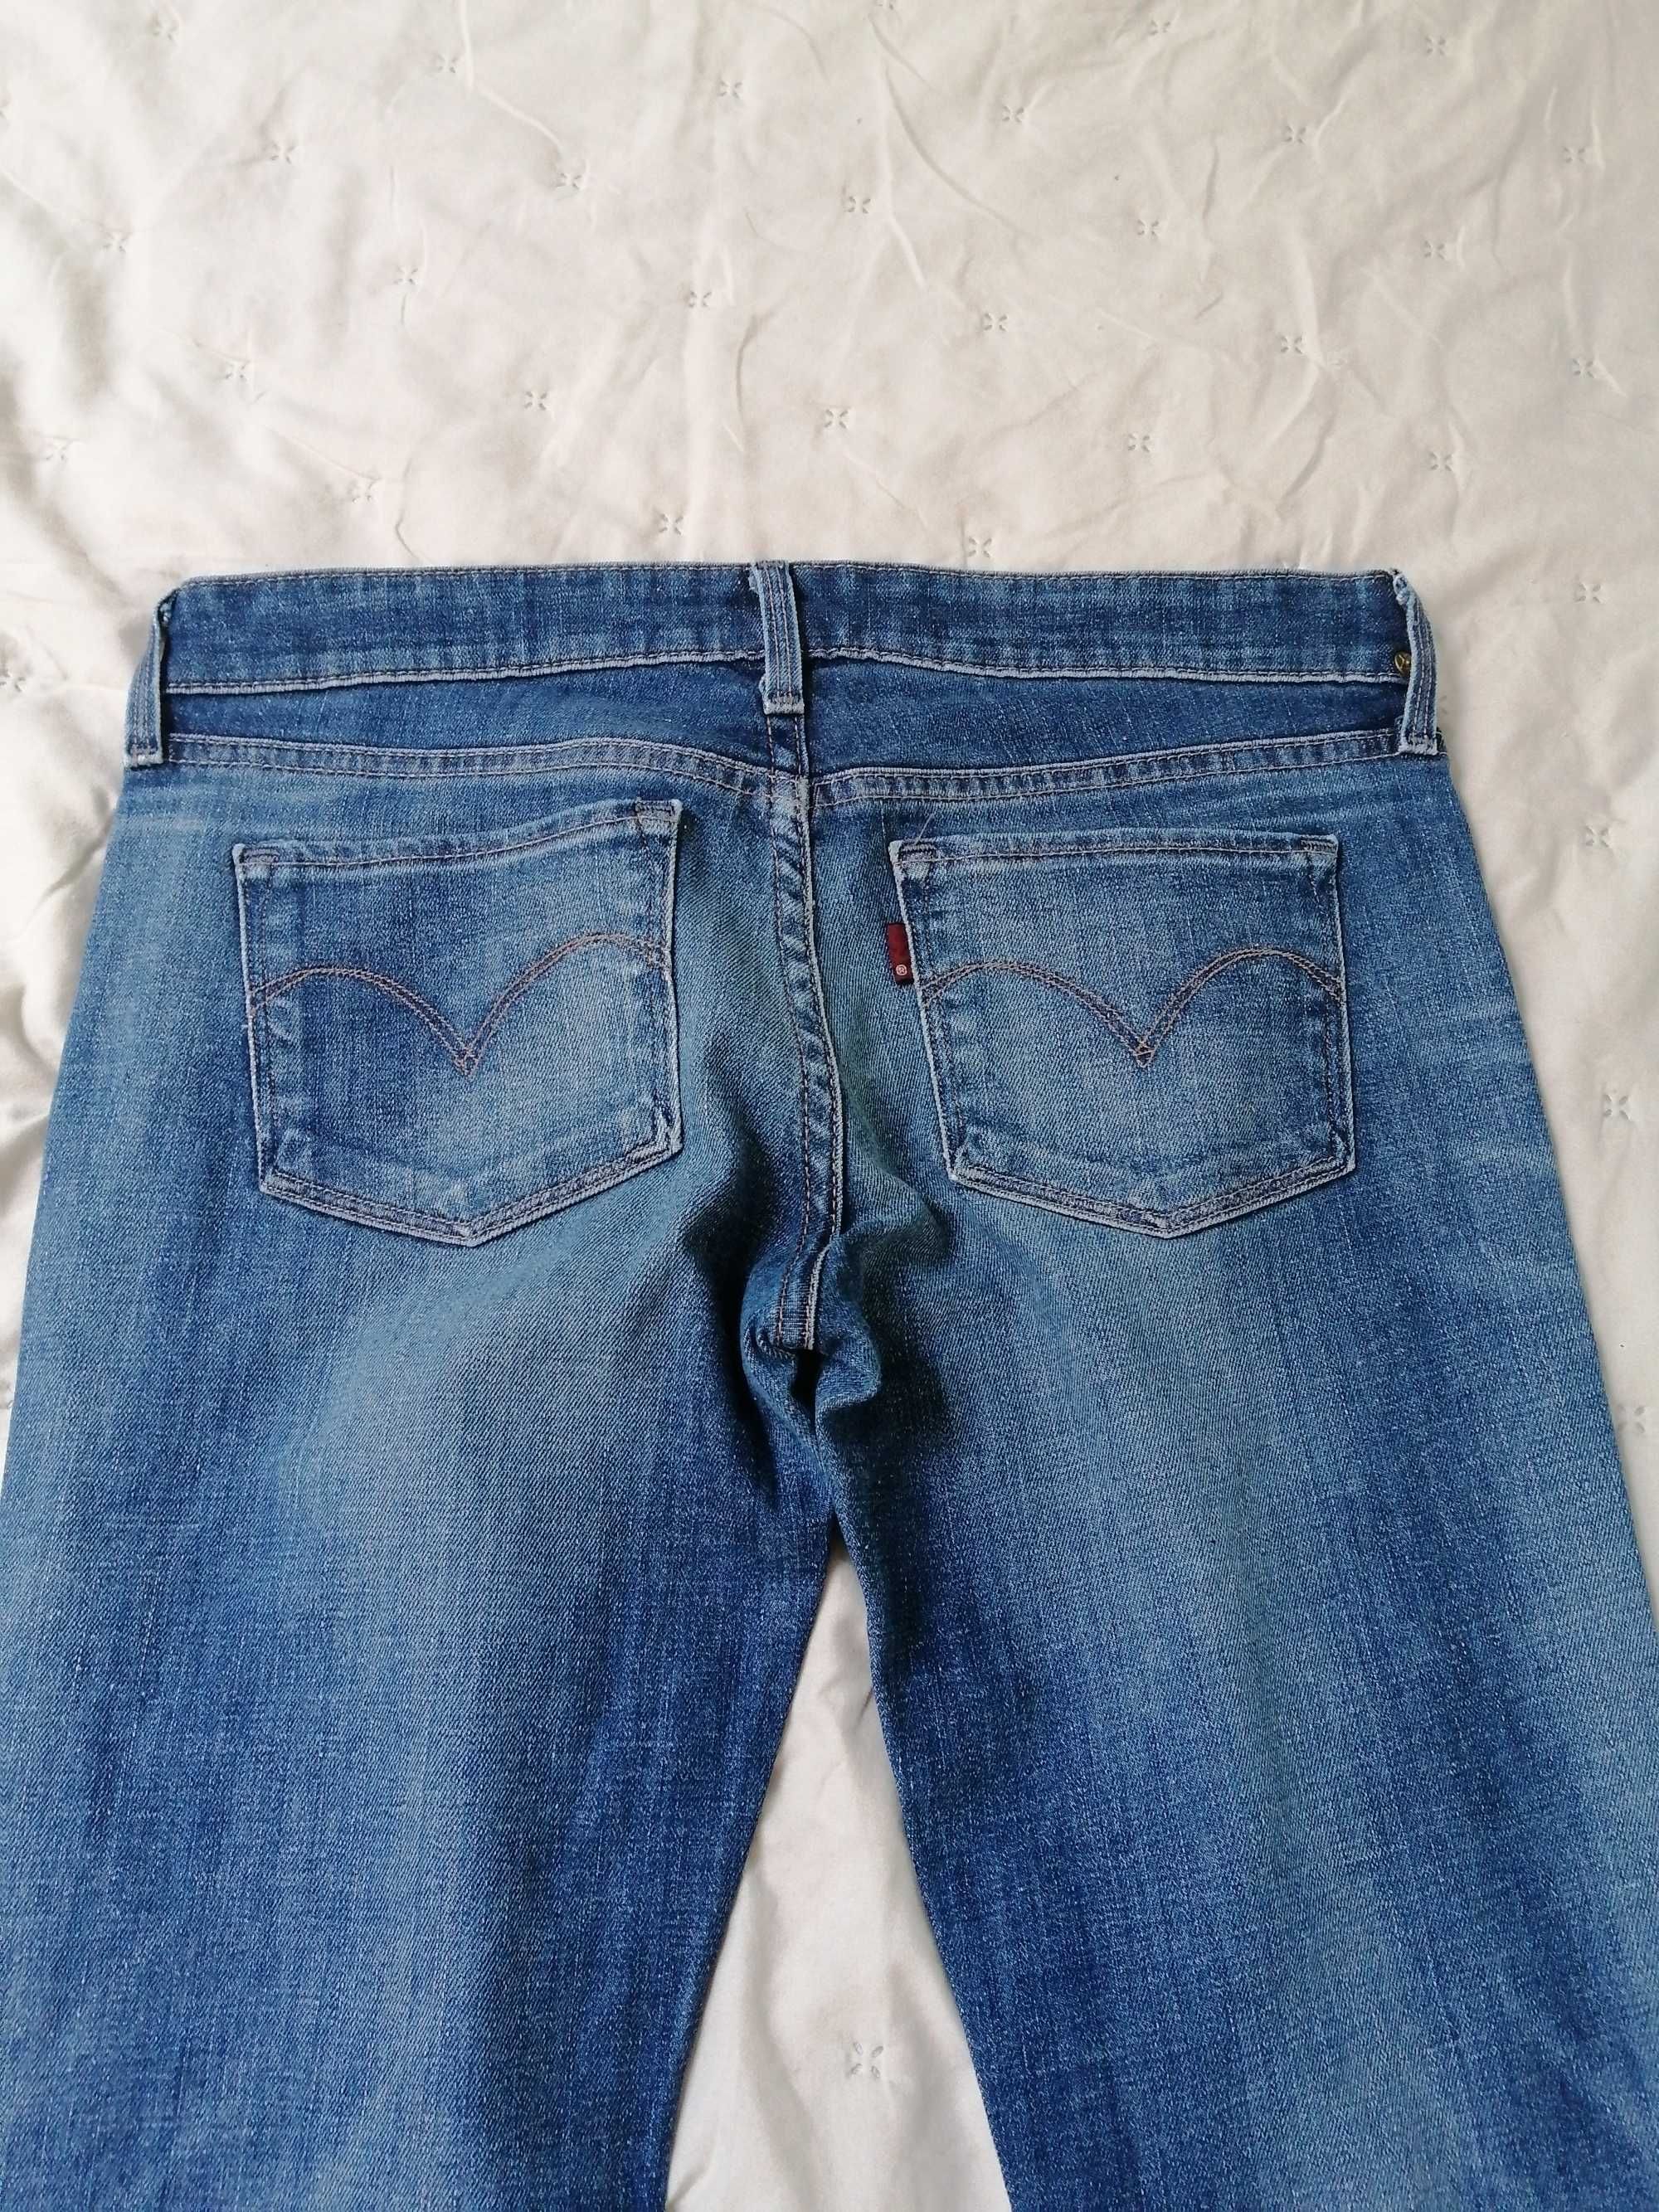 Skinny jeans W27 L32 Levi's rurki